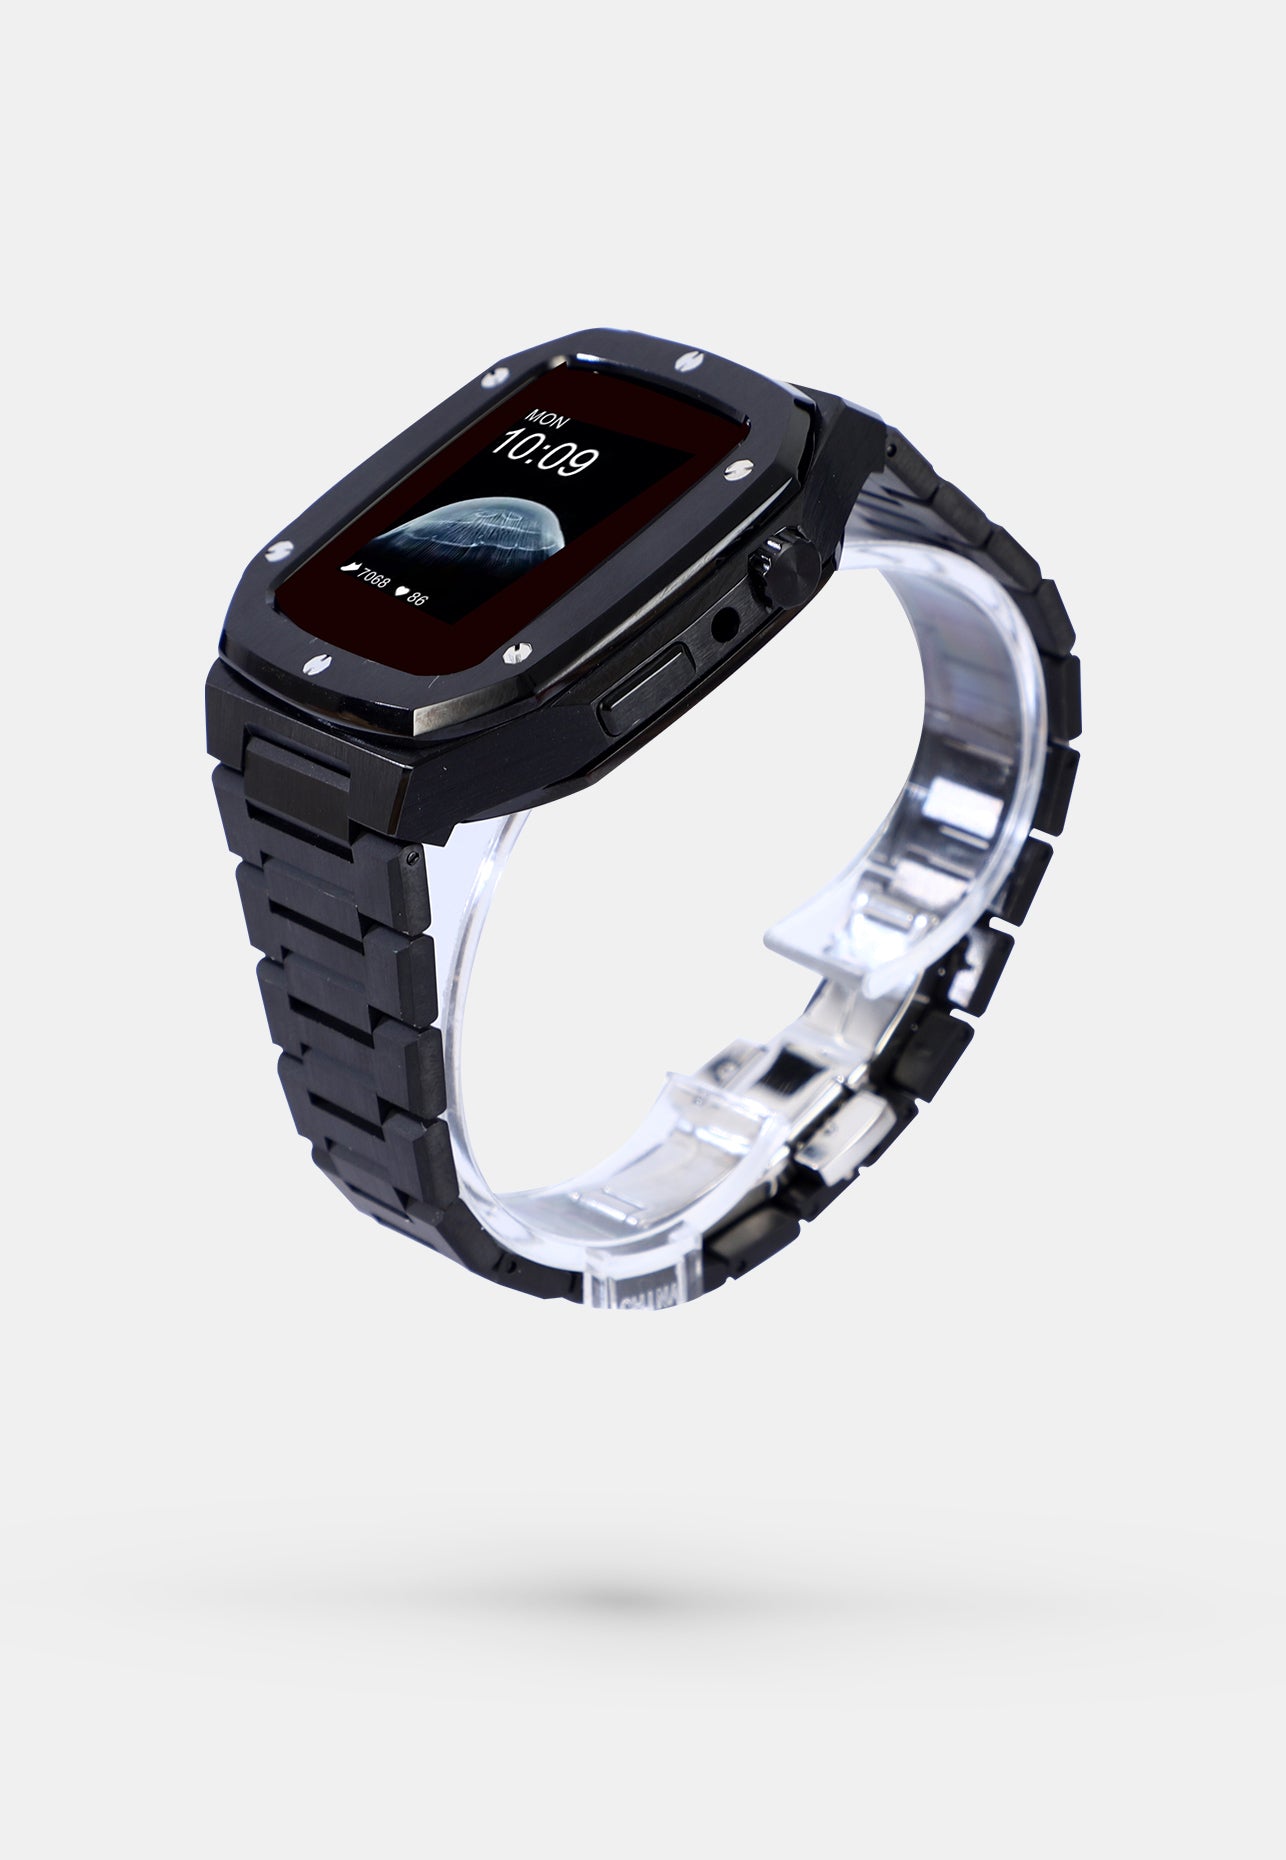 JetBlack - Imperial OAK - Coque et bracelet Apple Watch Noir - 44mm